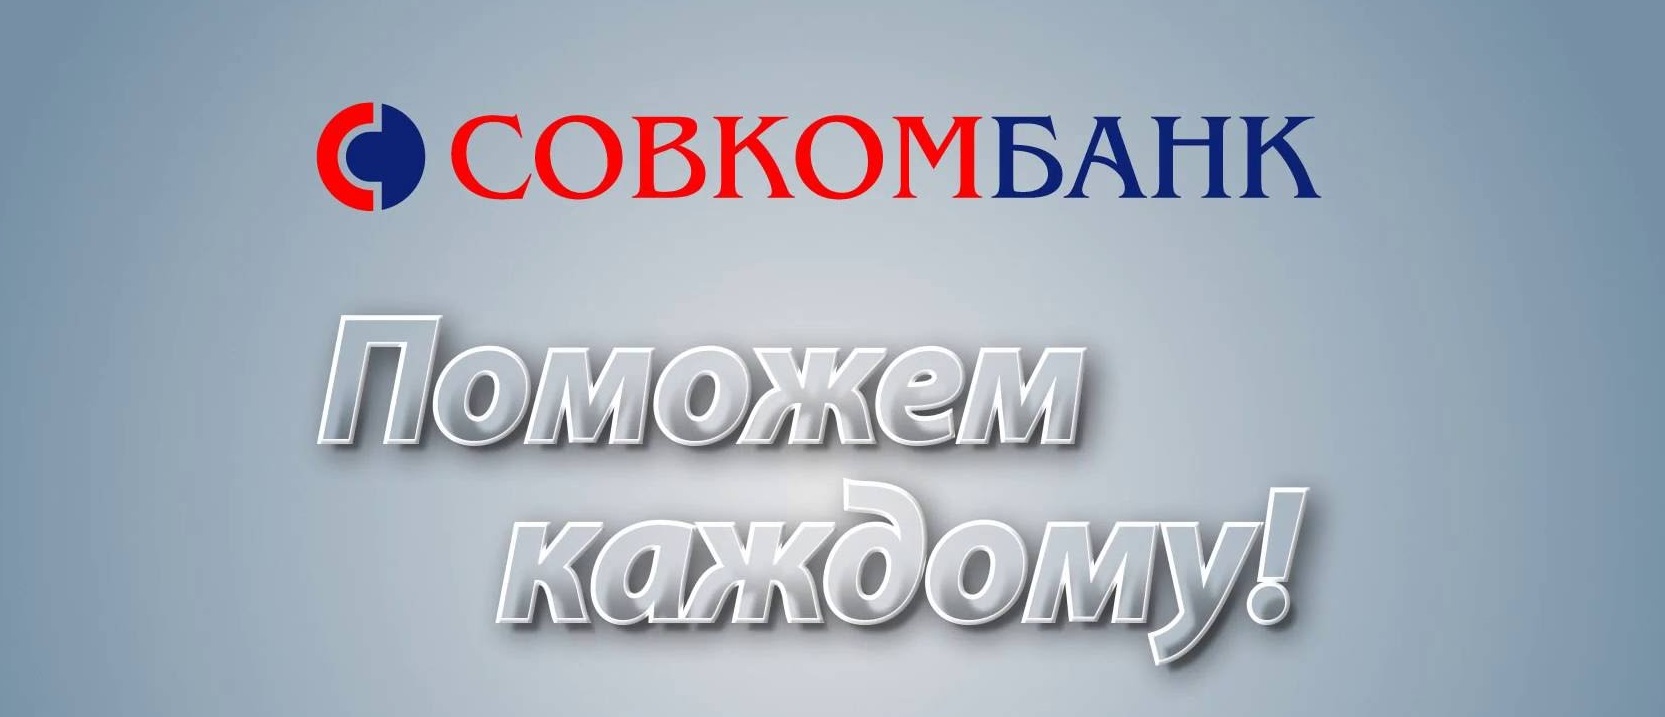 Совкомбанк — Как оформить кредит: требования и тарифы